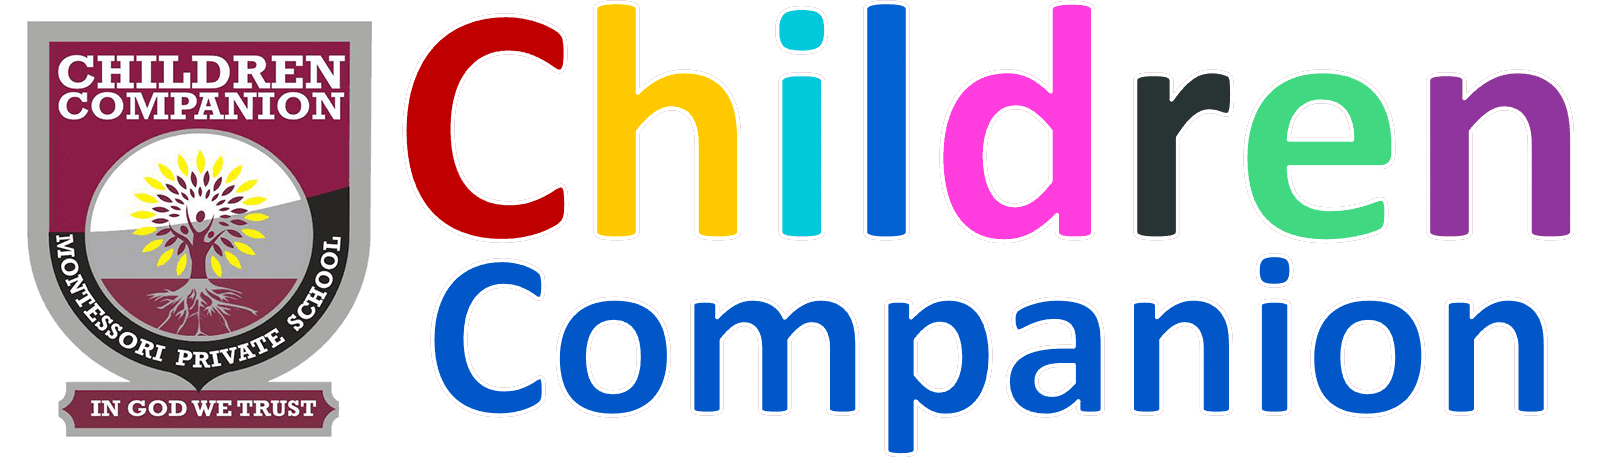 Children Companion